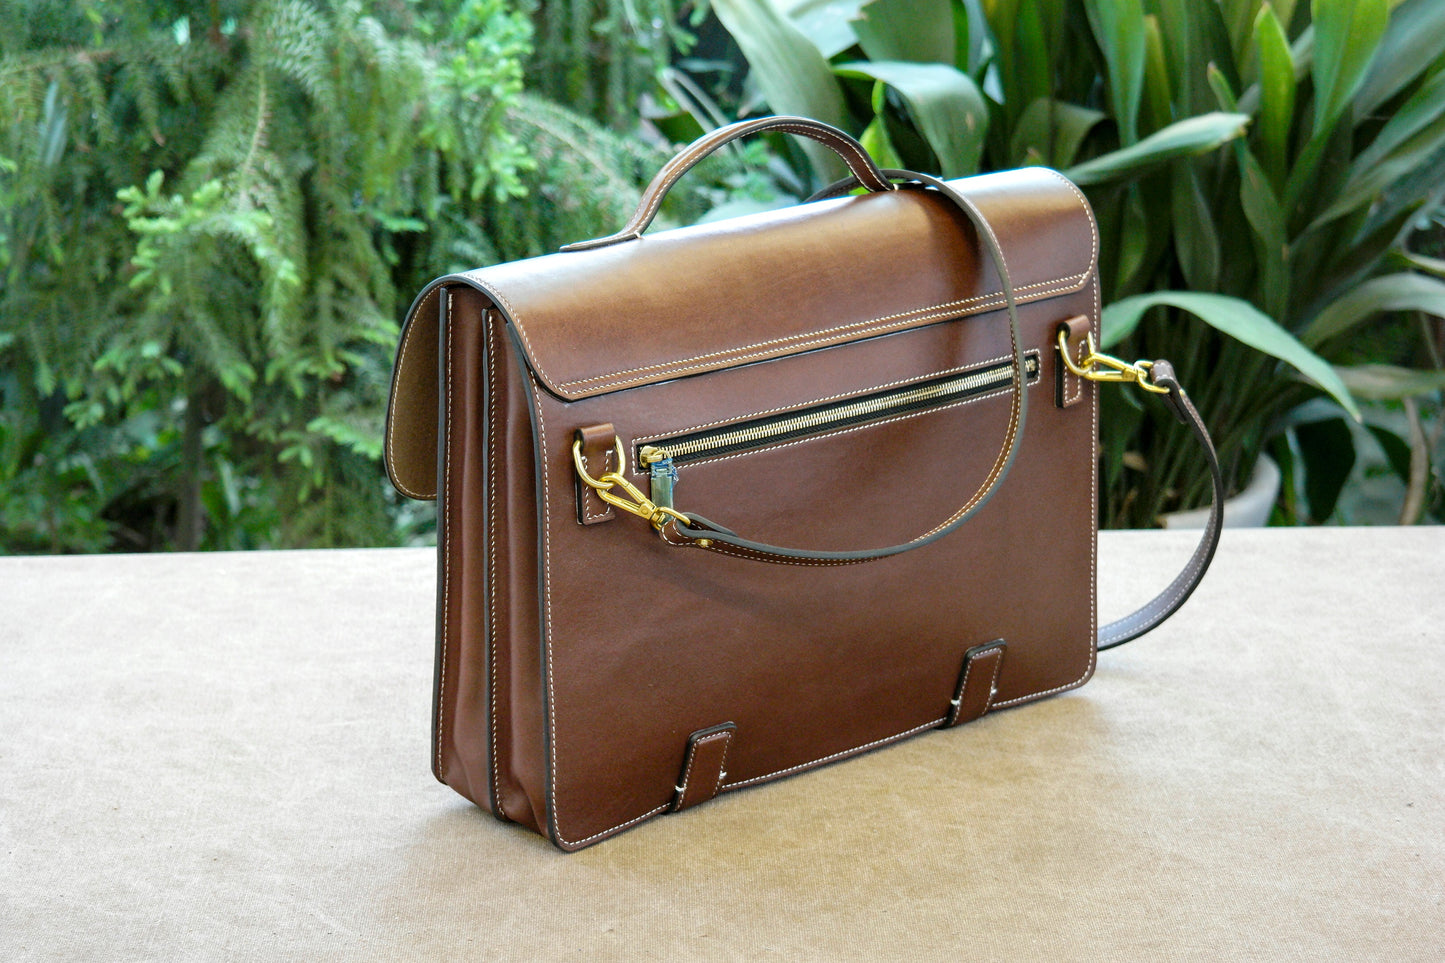 briefcase pattern/leather briefcase pattern/leather laptop bag pattern/leather messenger bag pattern